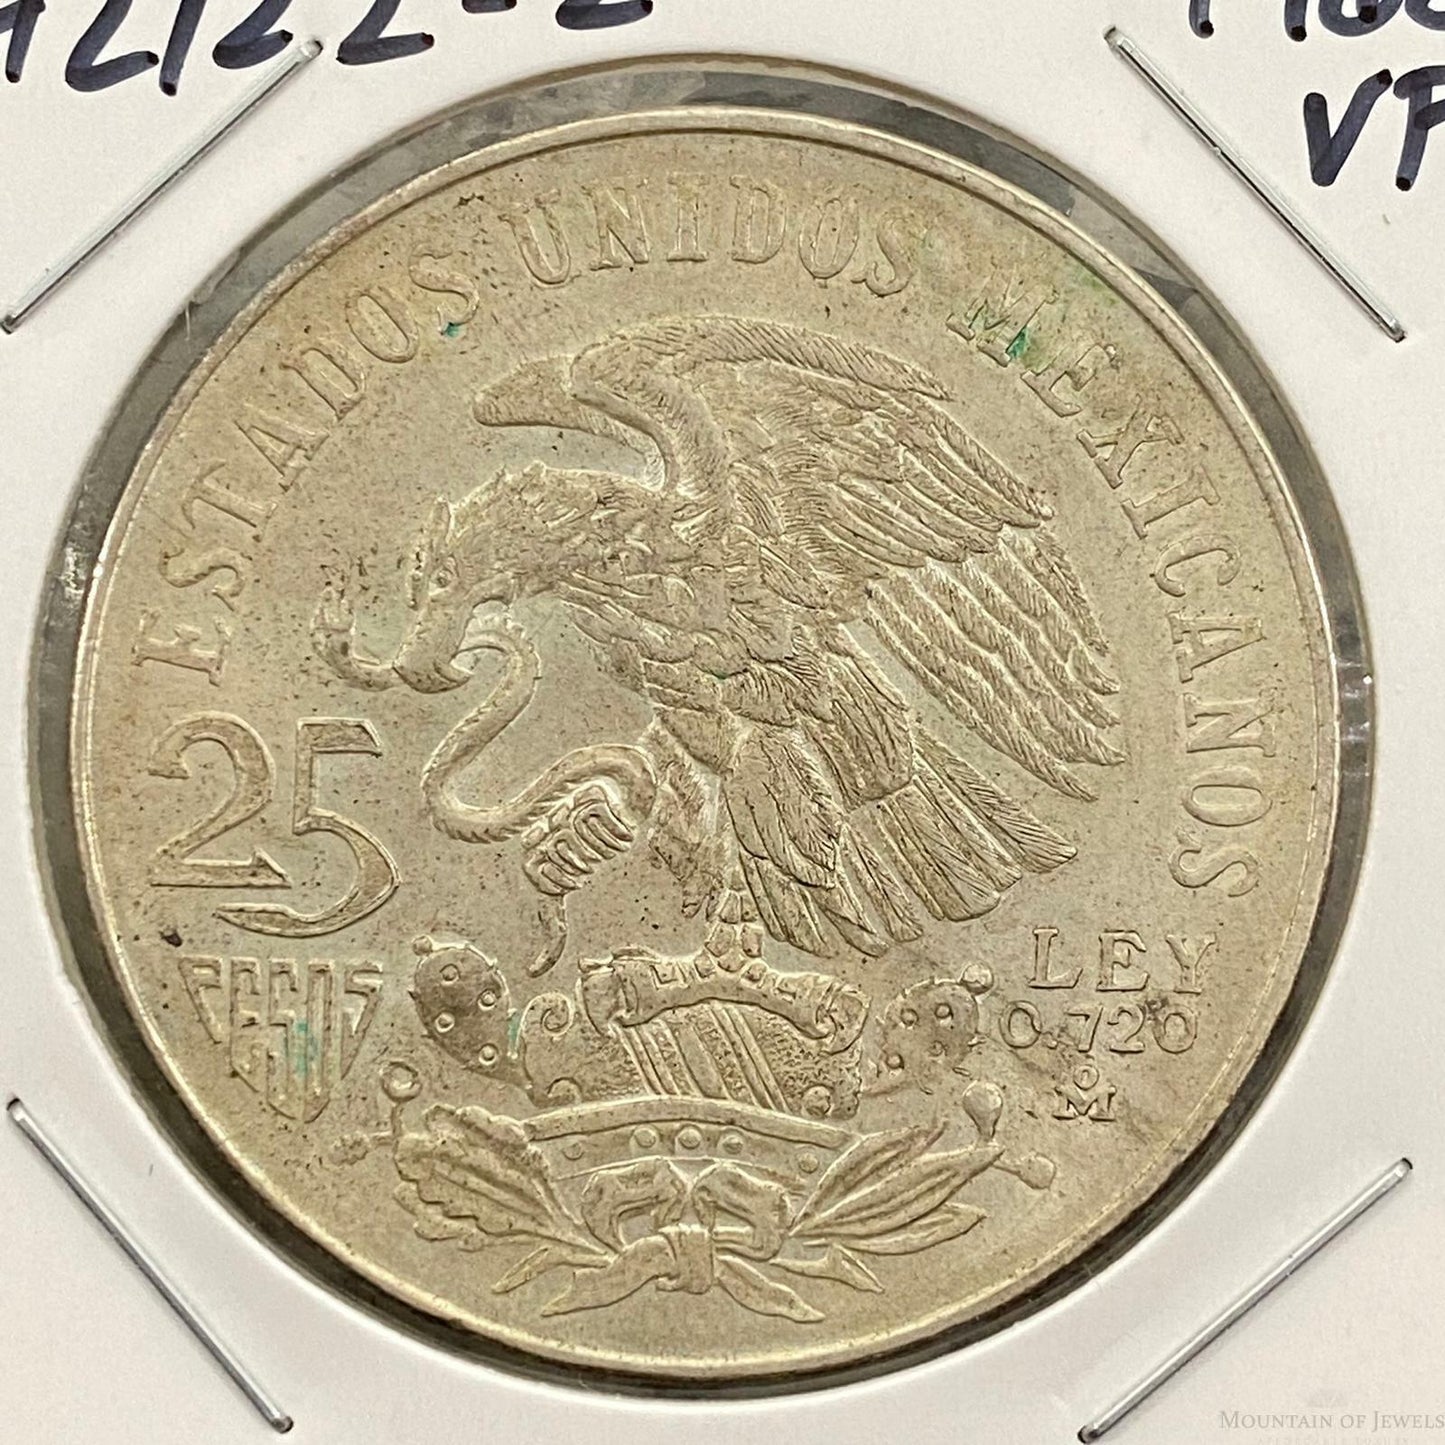 1968 Mexico 25 Pesos .720 Silver Olympic Games VF Collectible Coin #42122-2